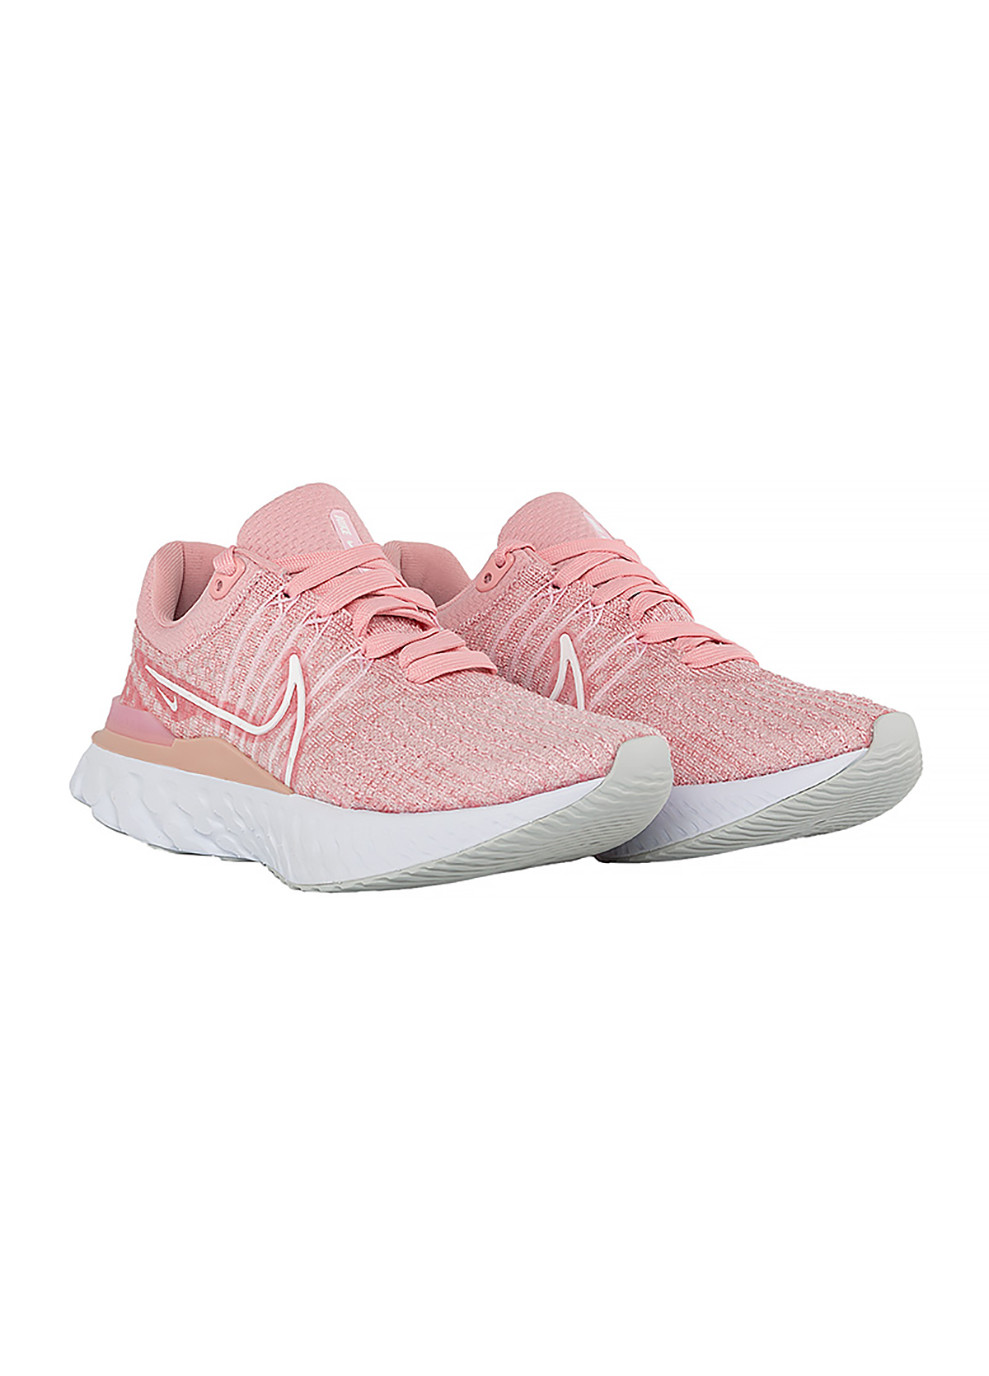 Розовые демисезонные женские кроссовки react infinity run fk 3 розовый Nike